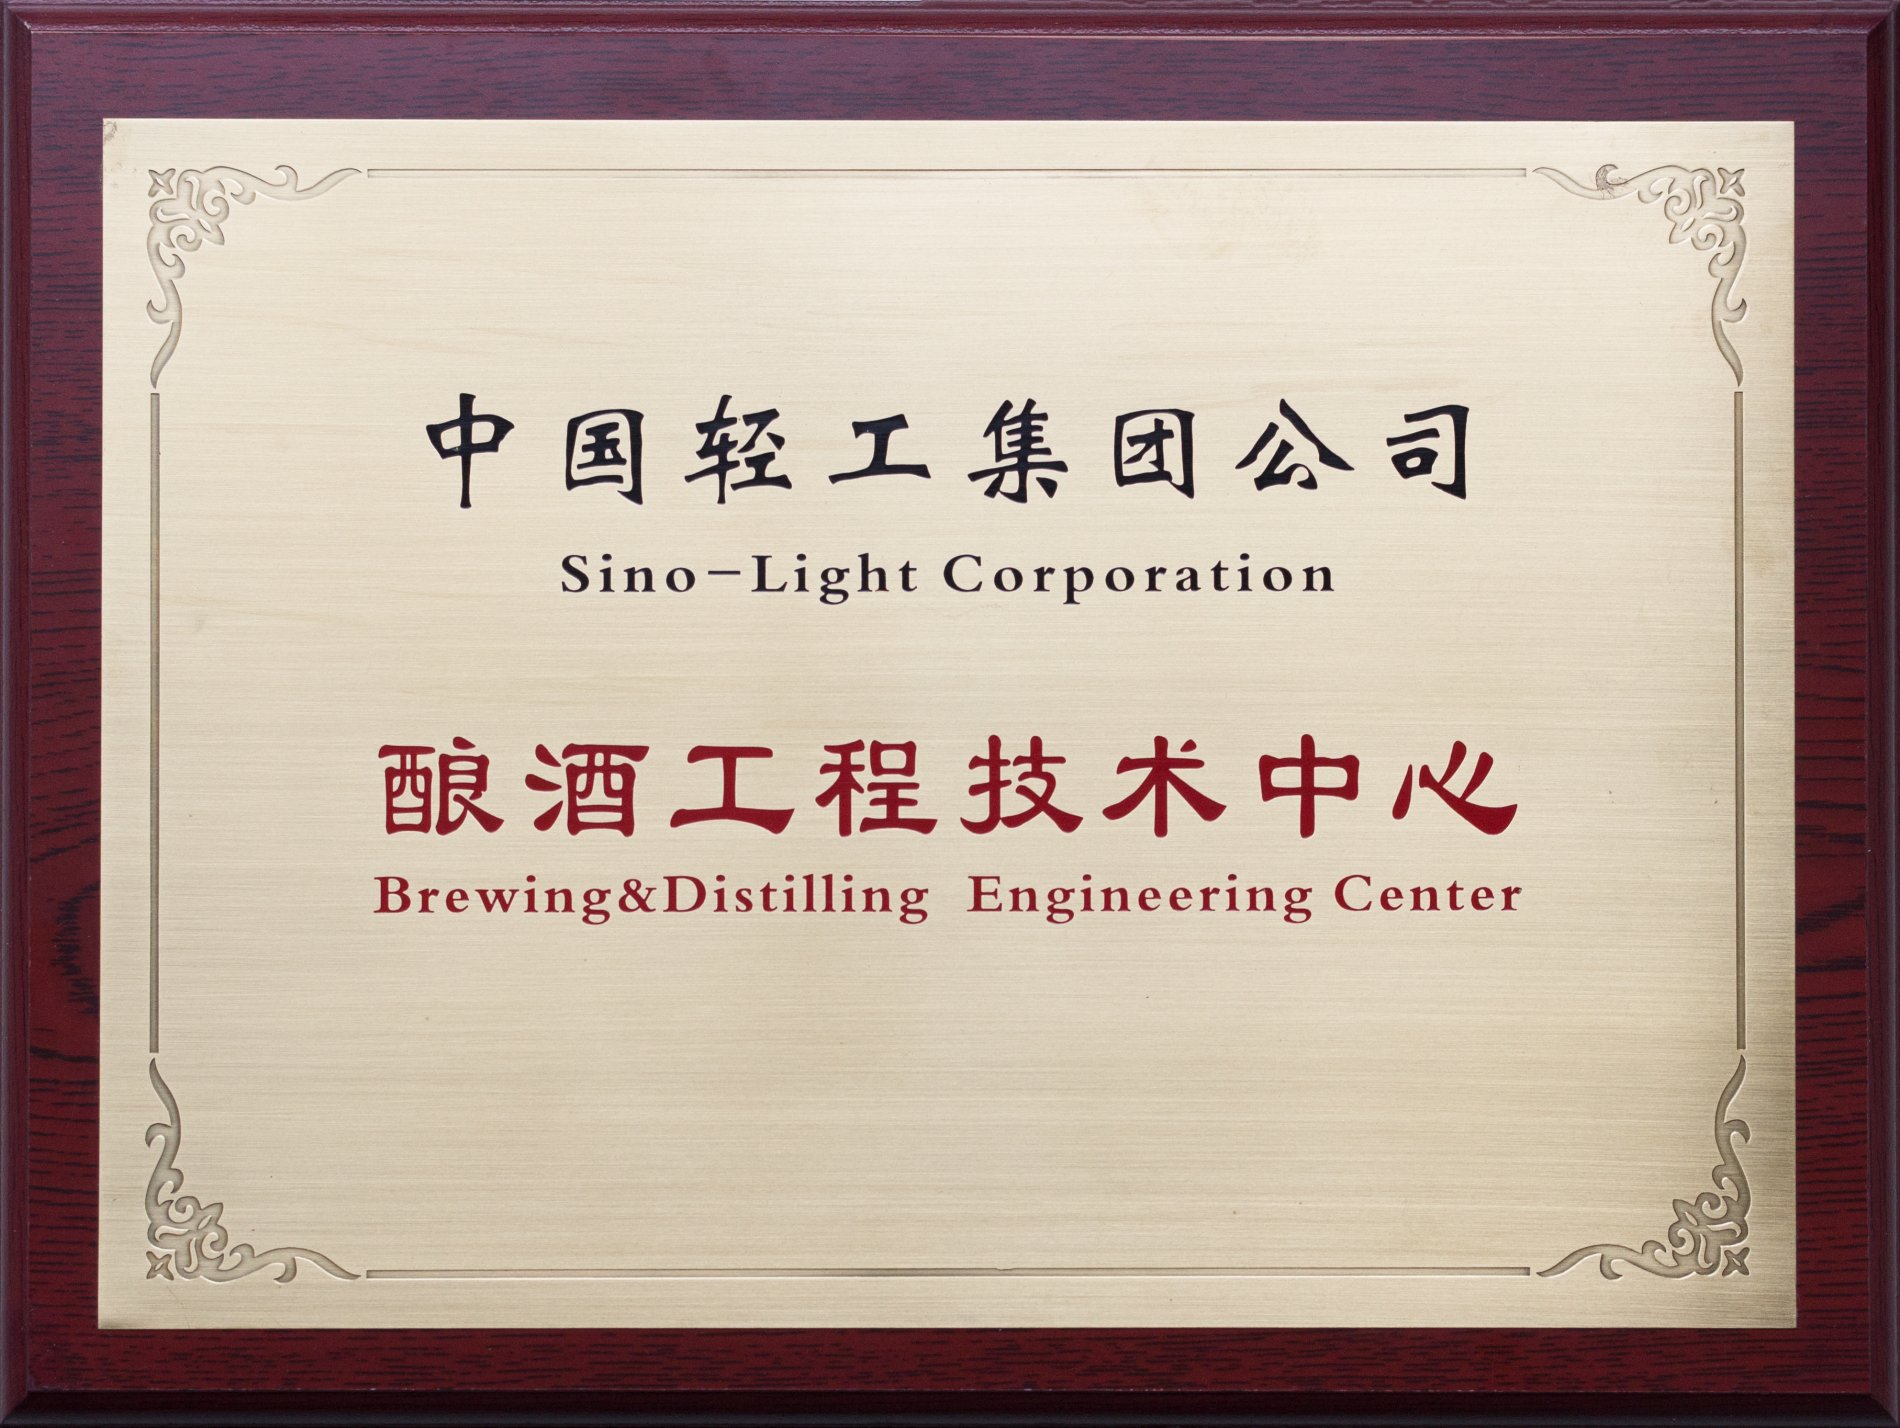 中国轻工集团酿酒工程技术中心